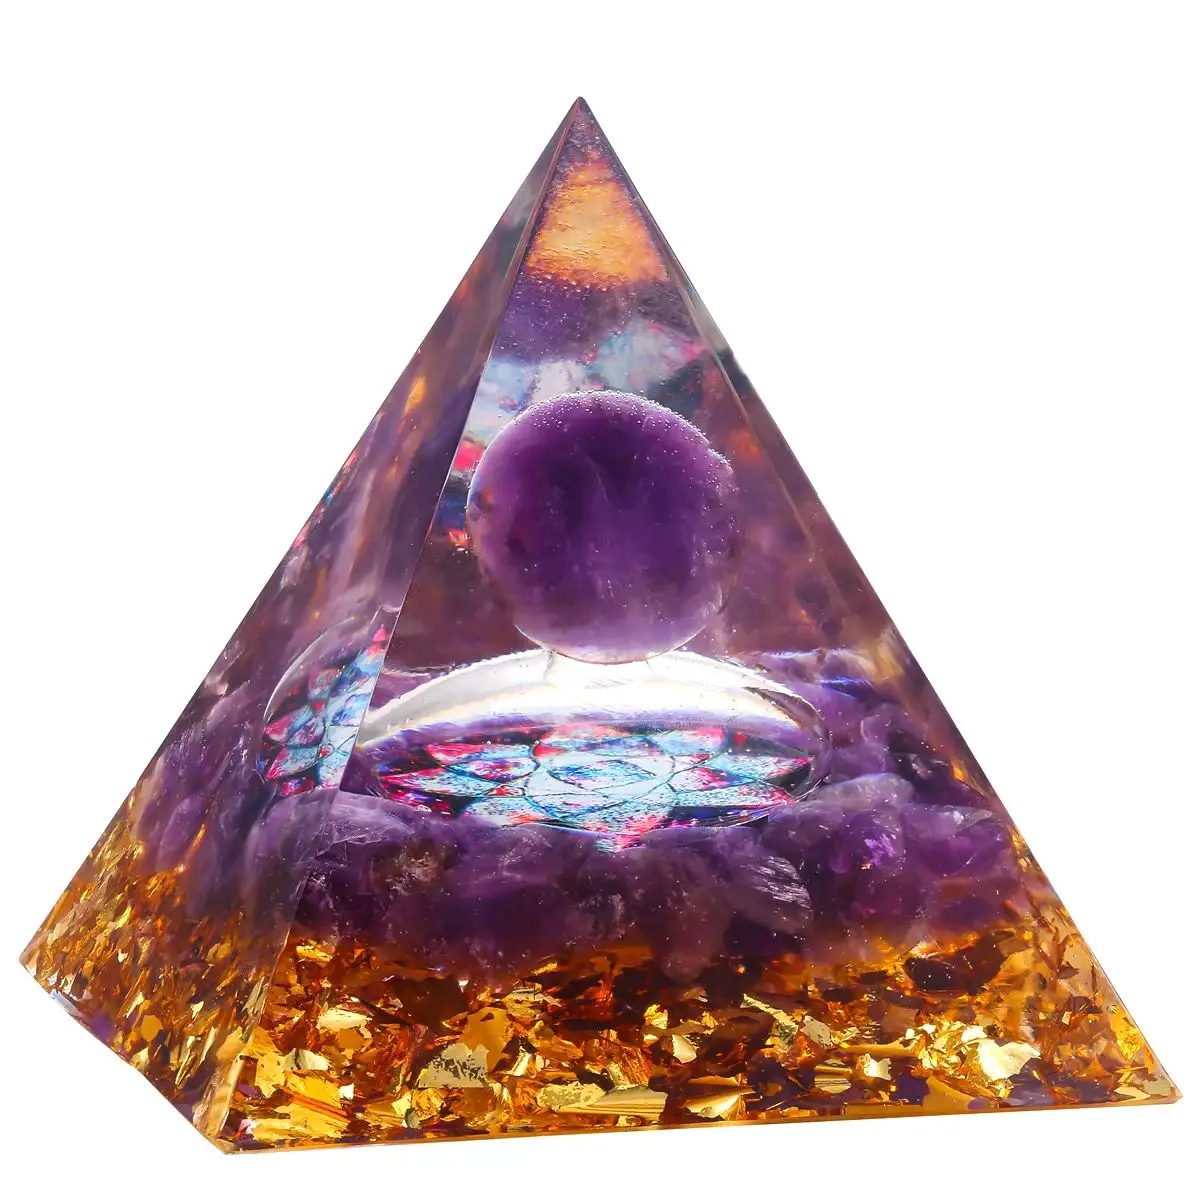 Cristal atacado polido minerais pedra preciosa natural colorido 7 chakra pedra coberta para cristais de cura espiritual